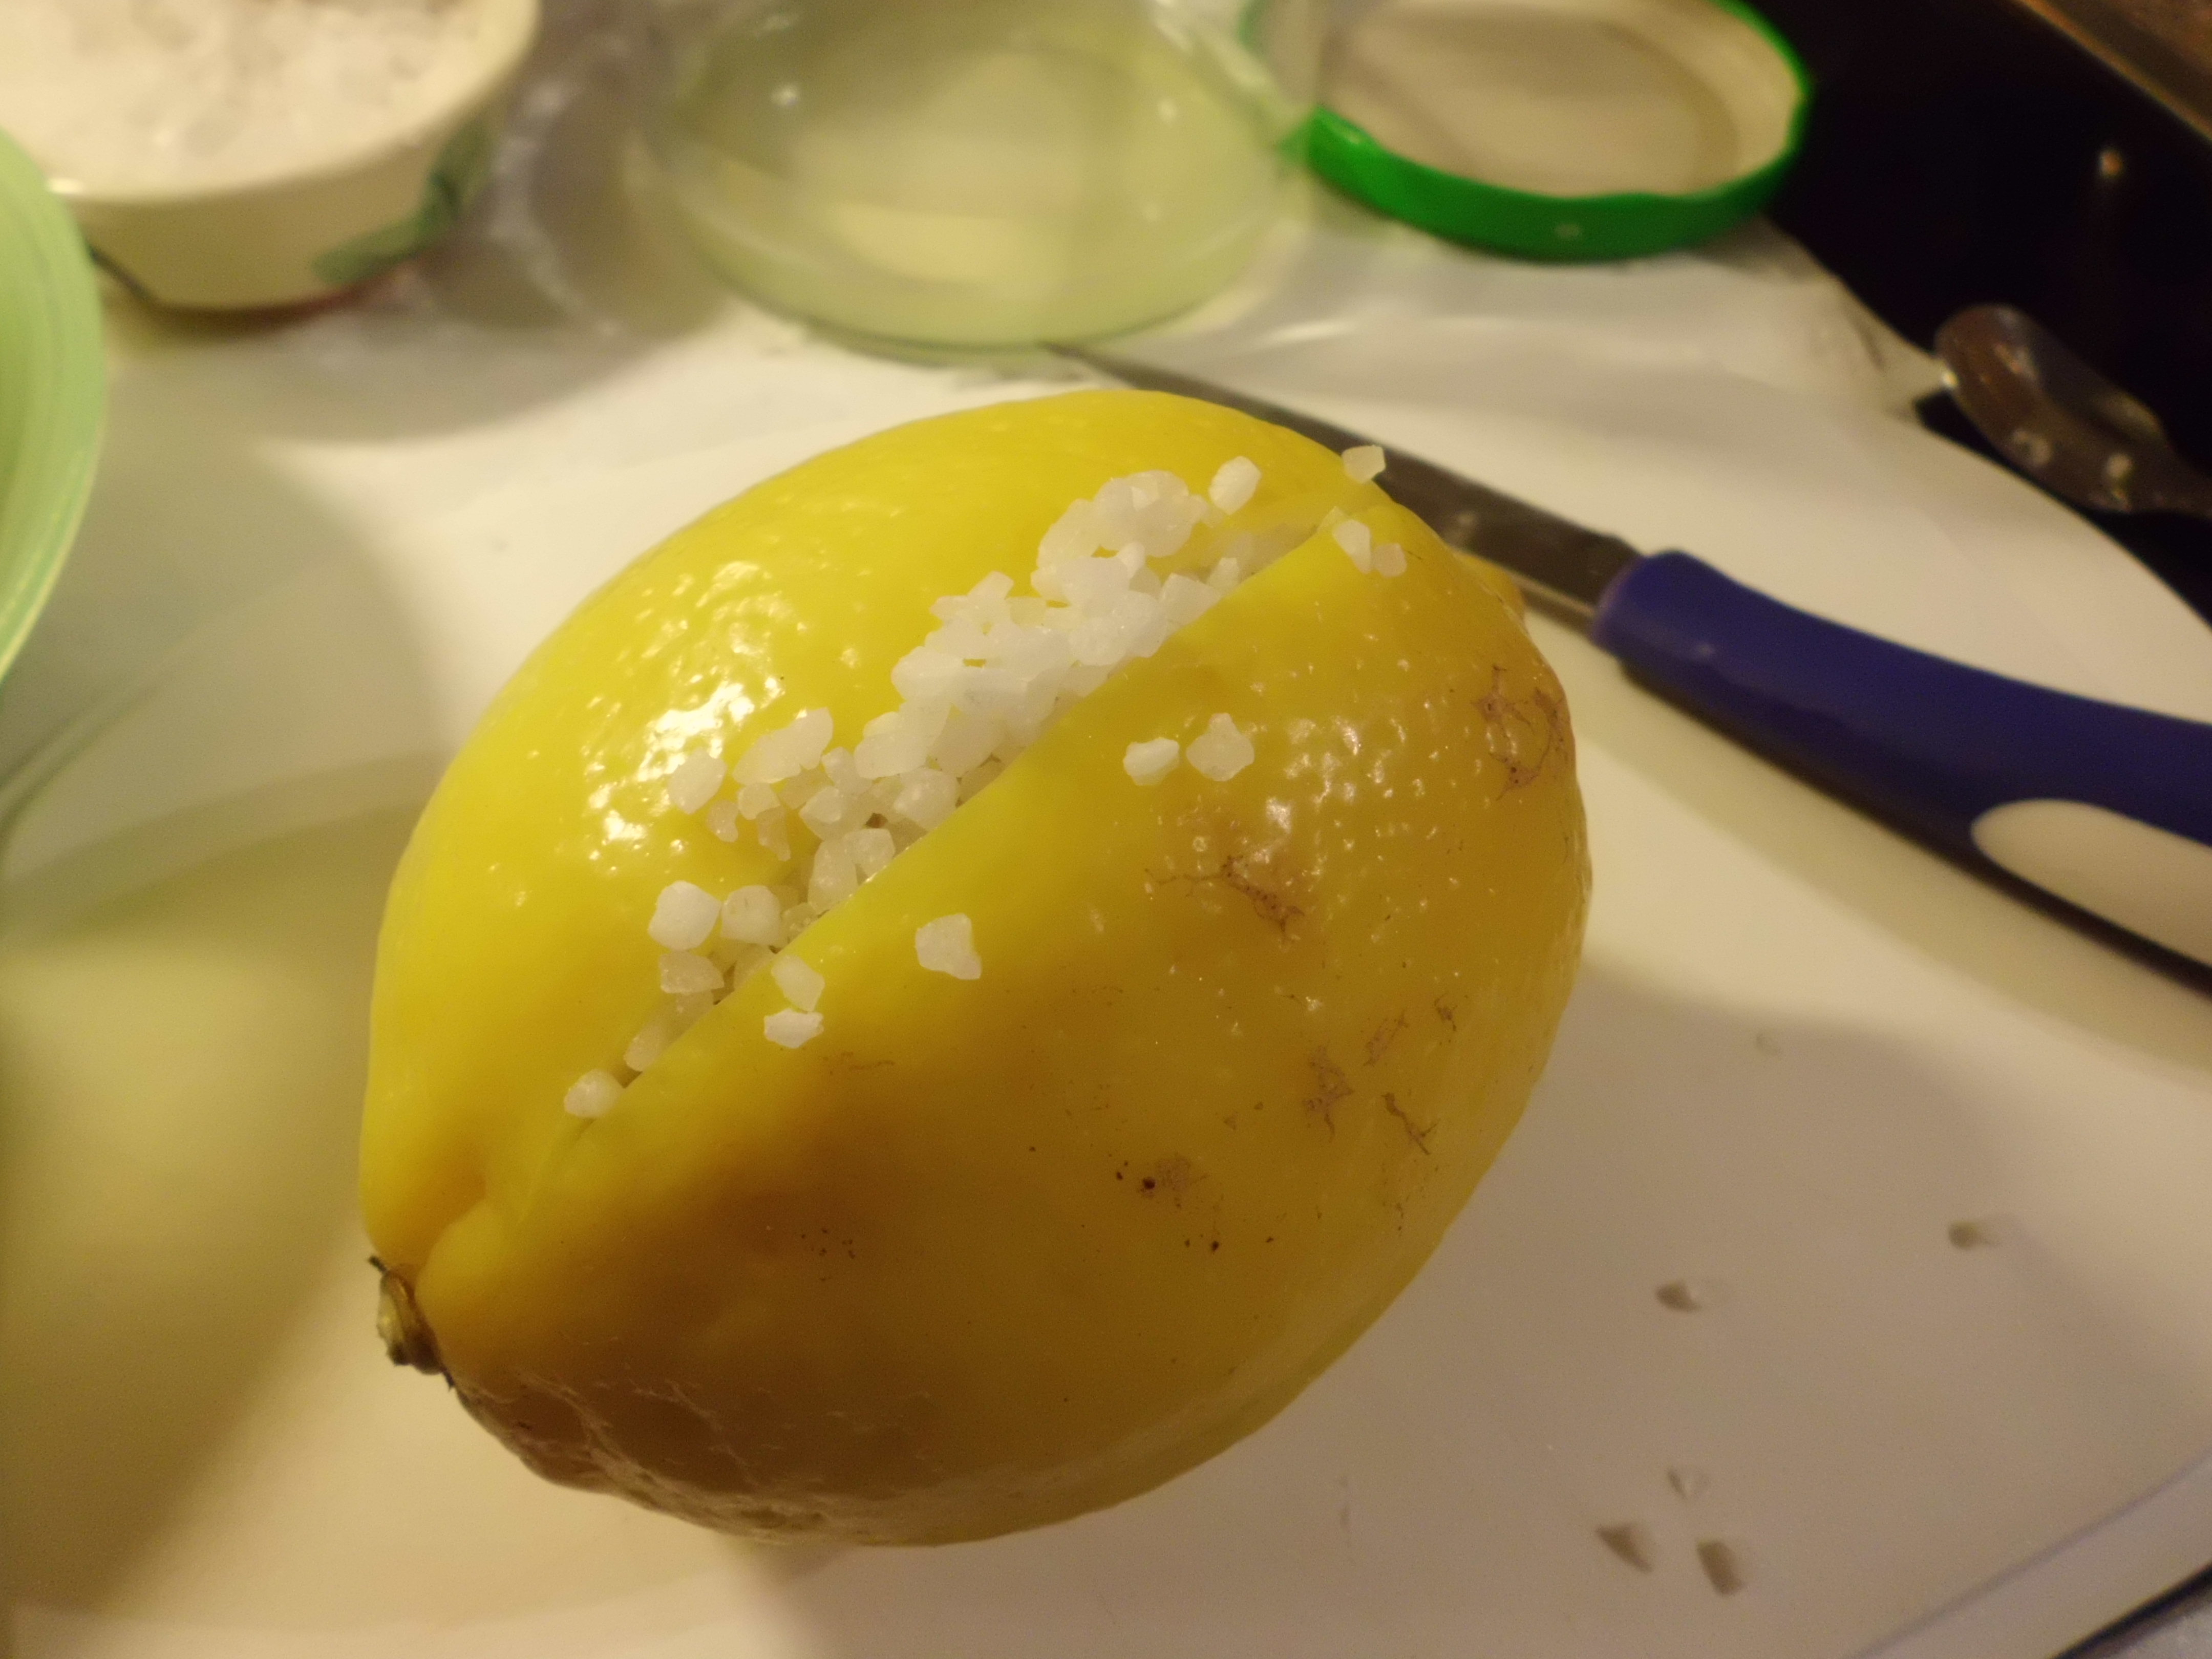 Zitrone gestopft mit Salzkörner